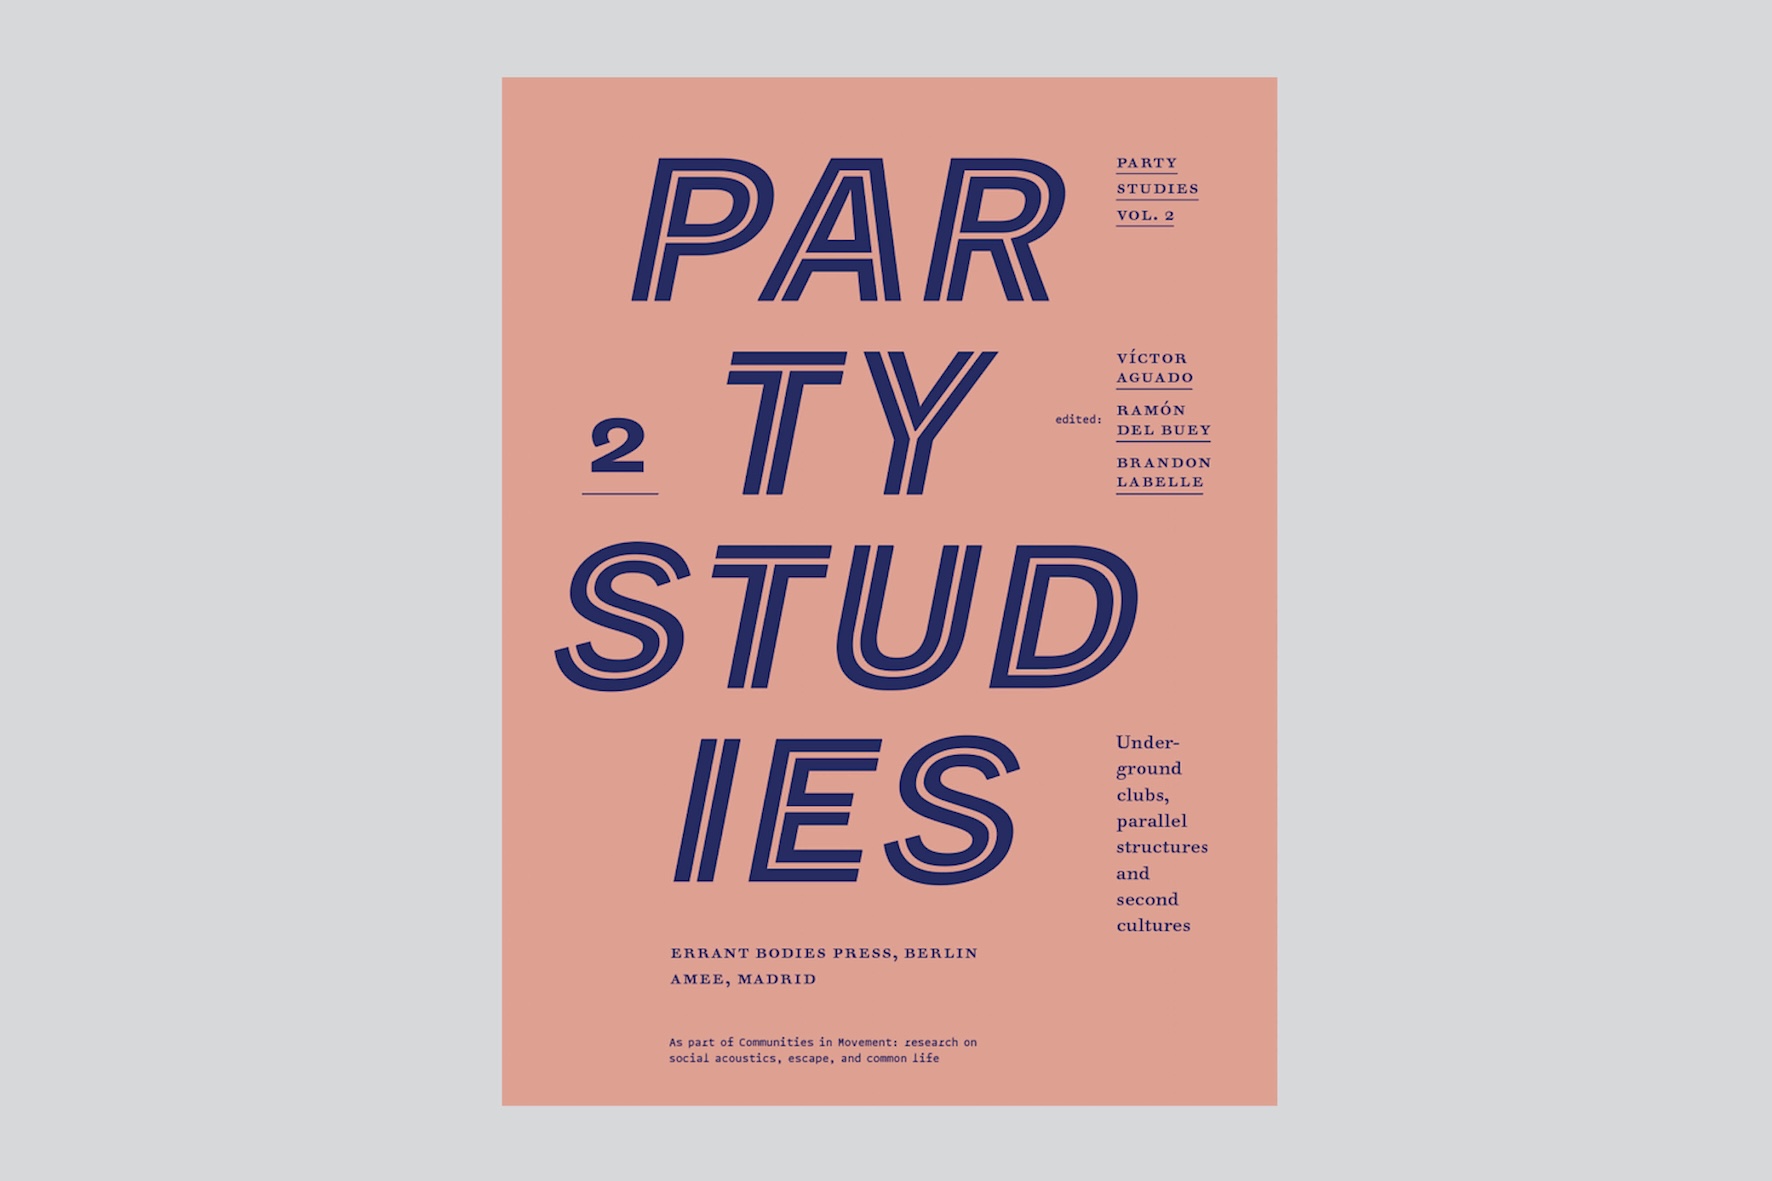 Party Studies, vol. 2